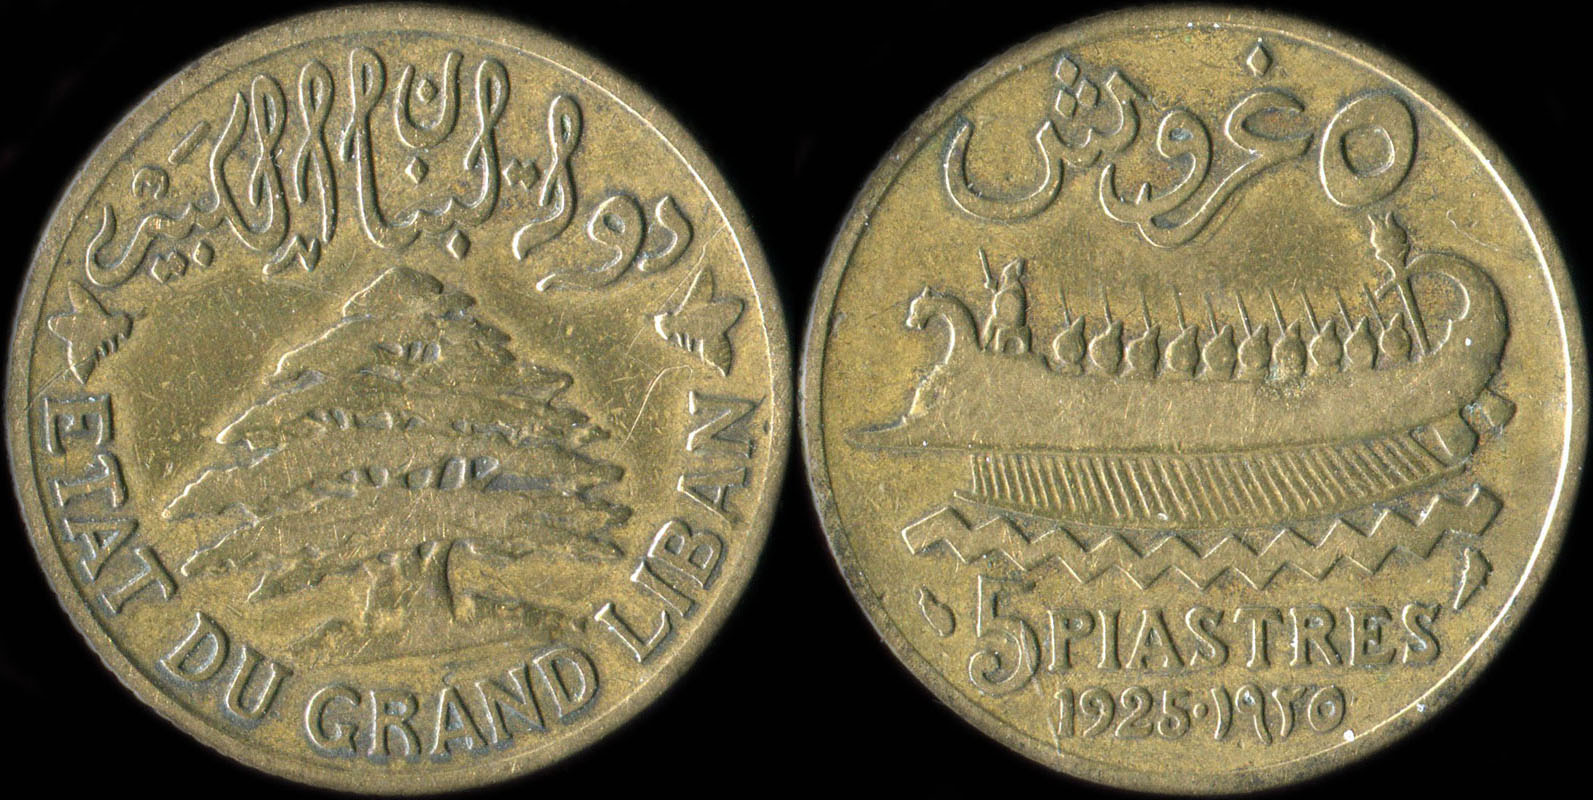 Pièce de 5 piastres 1925 type à la trirème - Etat du Grand Liban